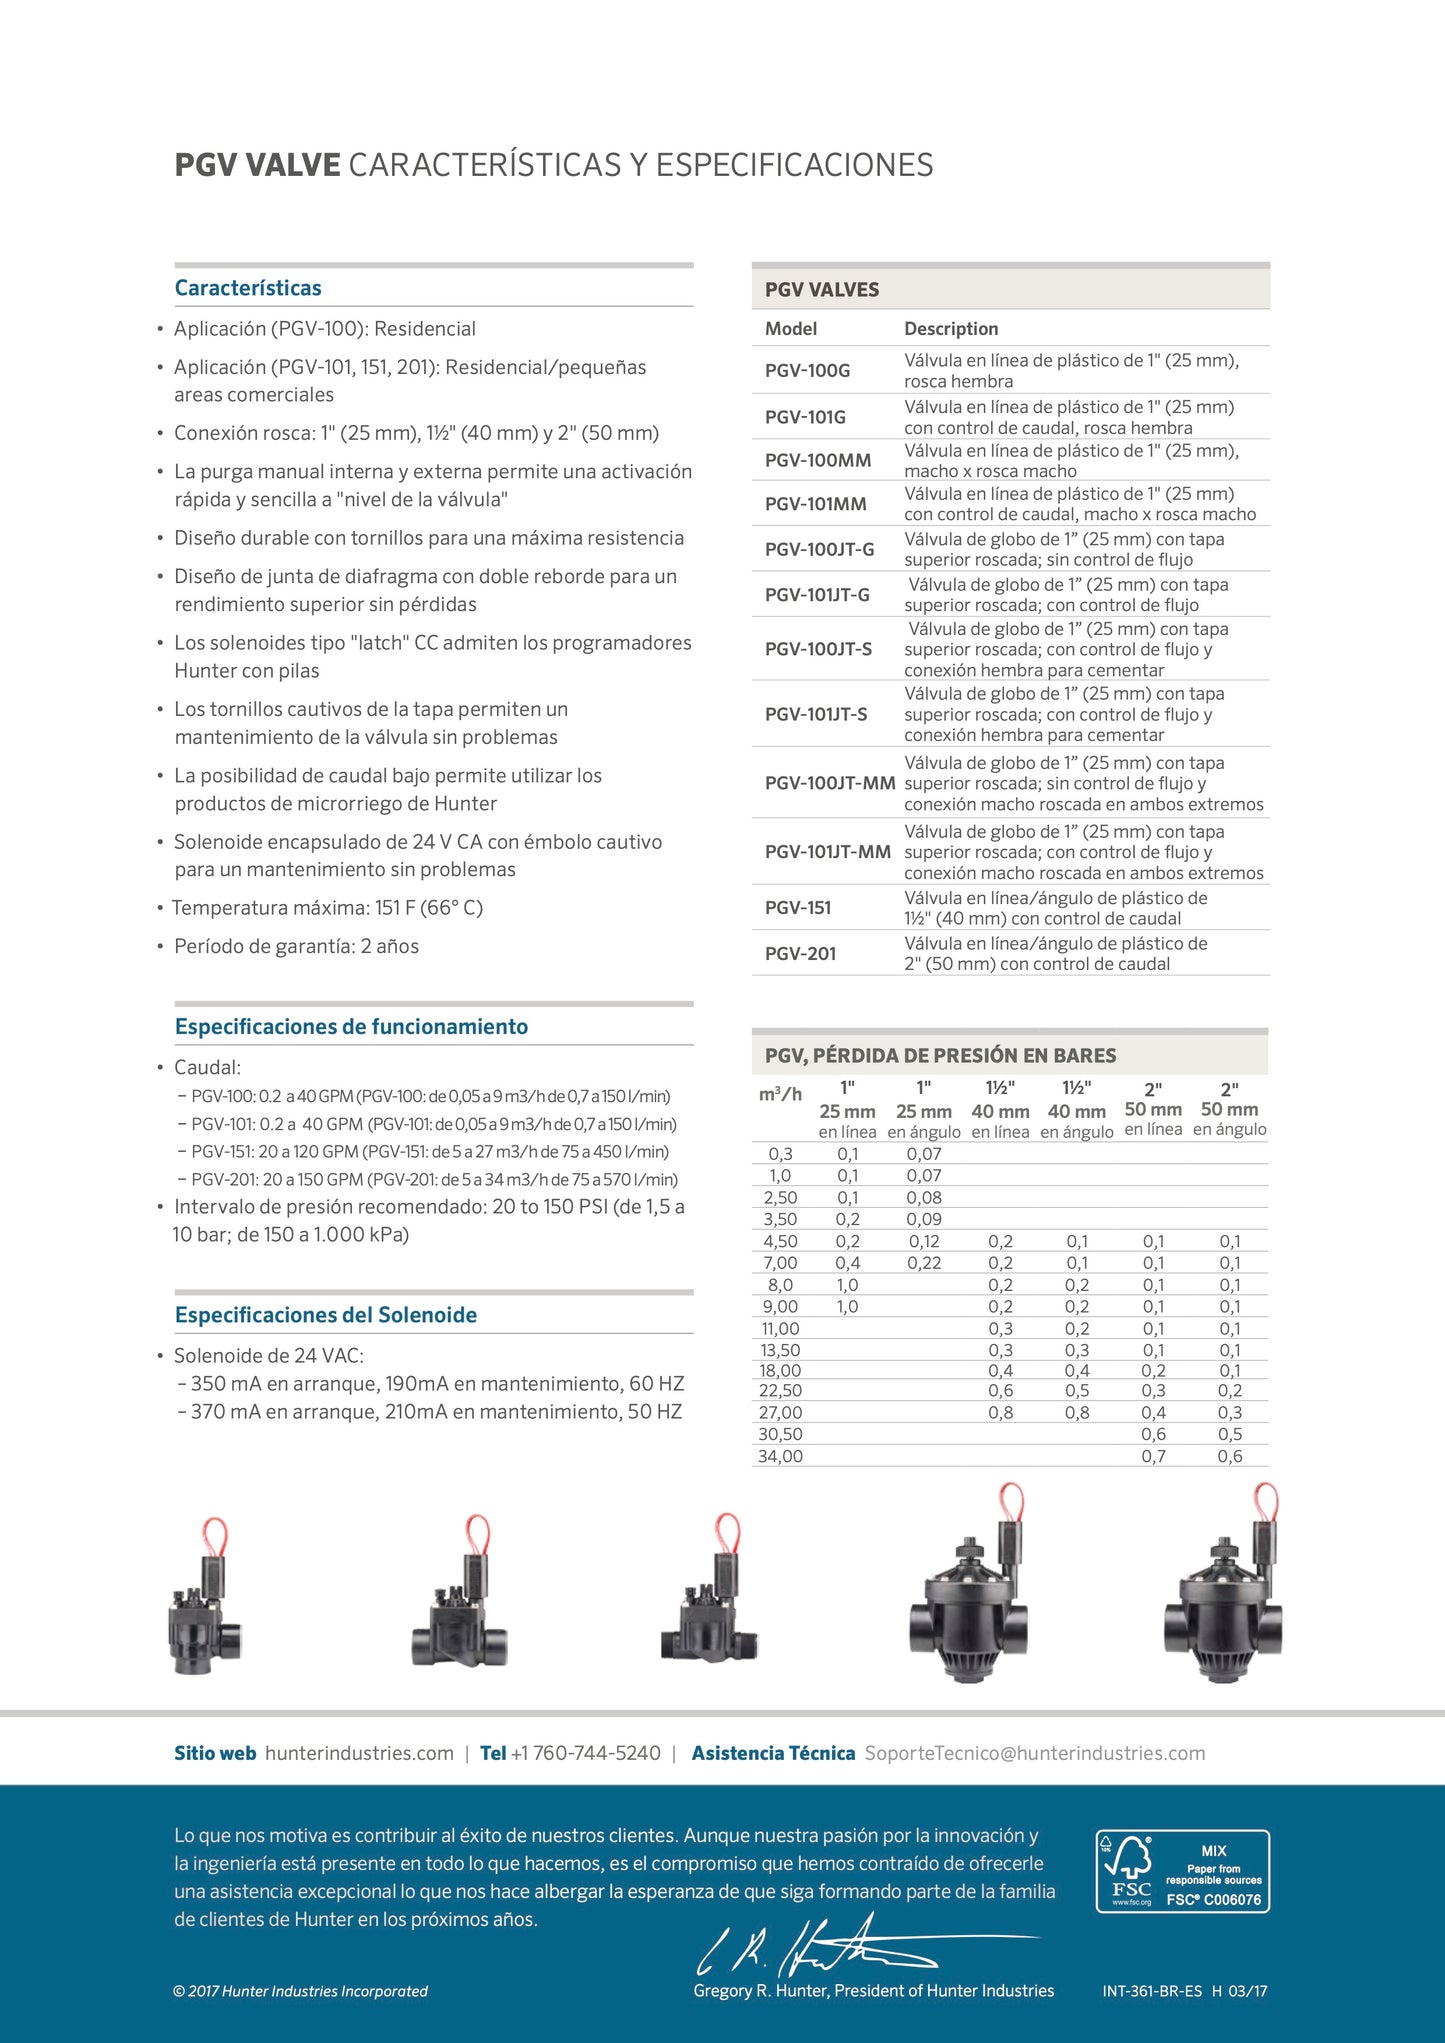 Válvula Eléctrica Hunter PGV-201 De 2 pulg. Incluye Solenoide y Control de Flujo